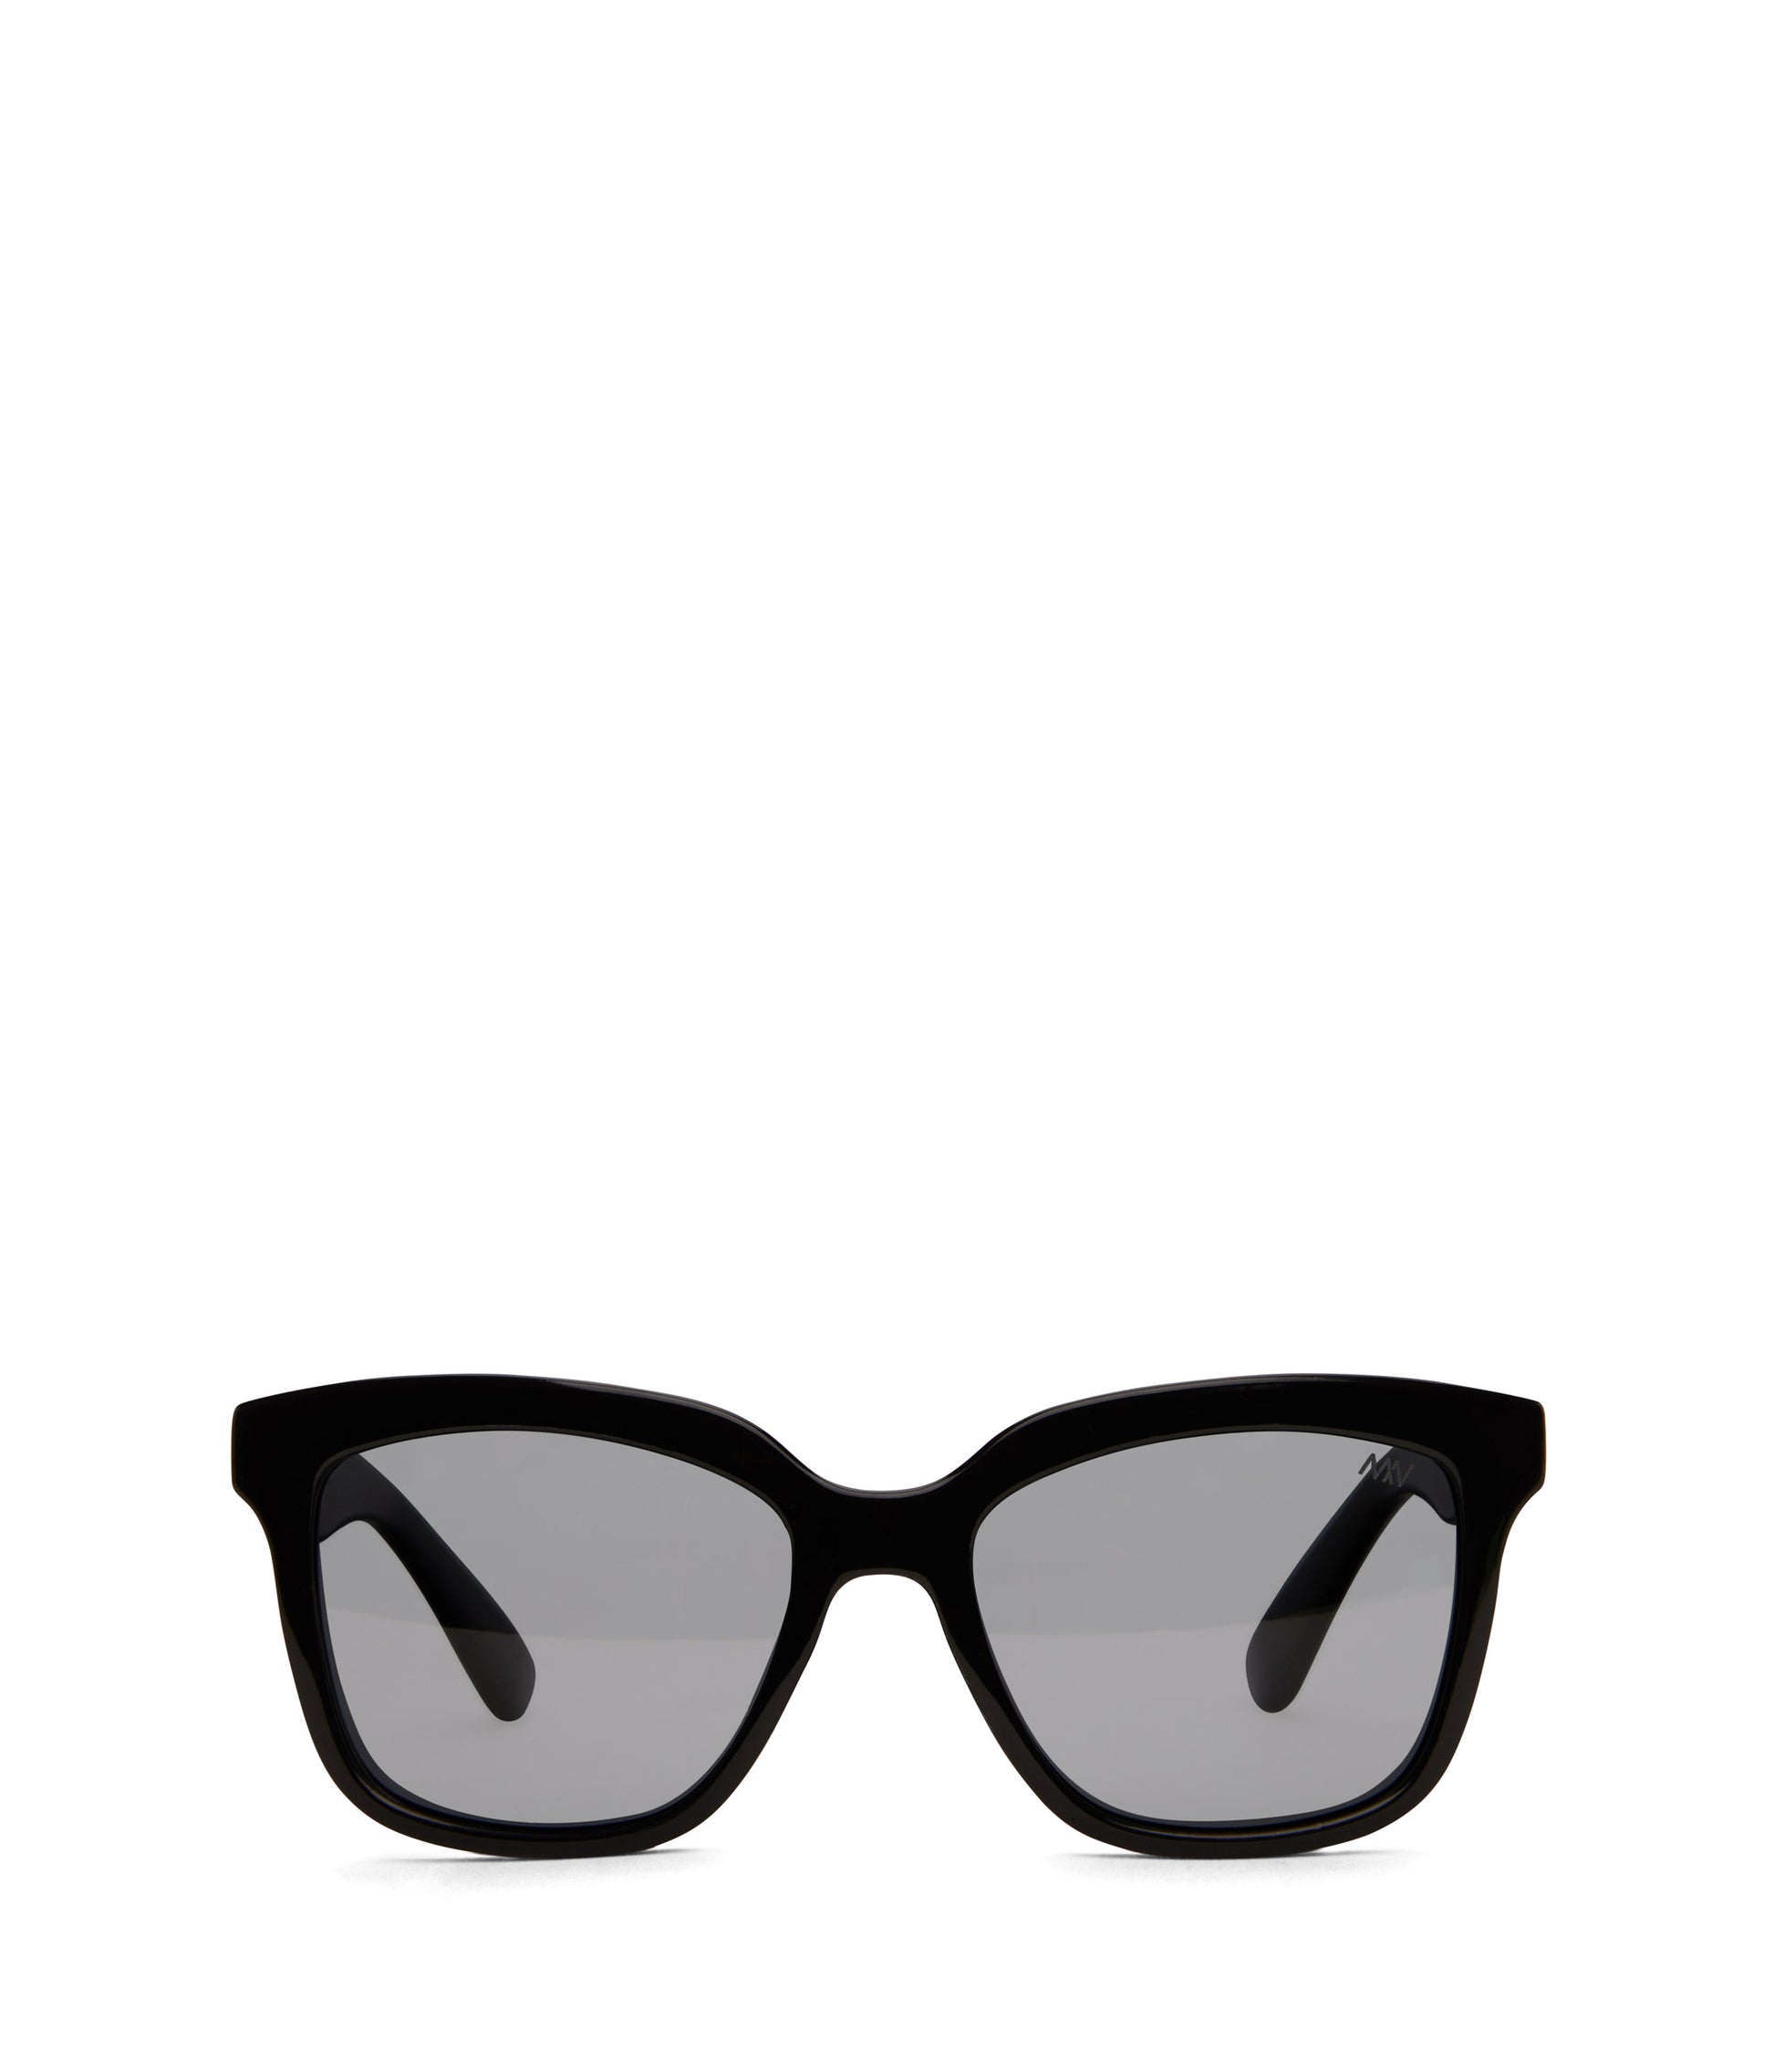 VIVIE Wayfarer Sunglasses | Color: Black - variant::blkblk